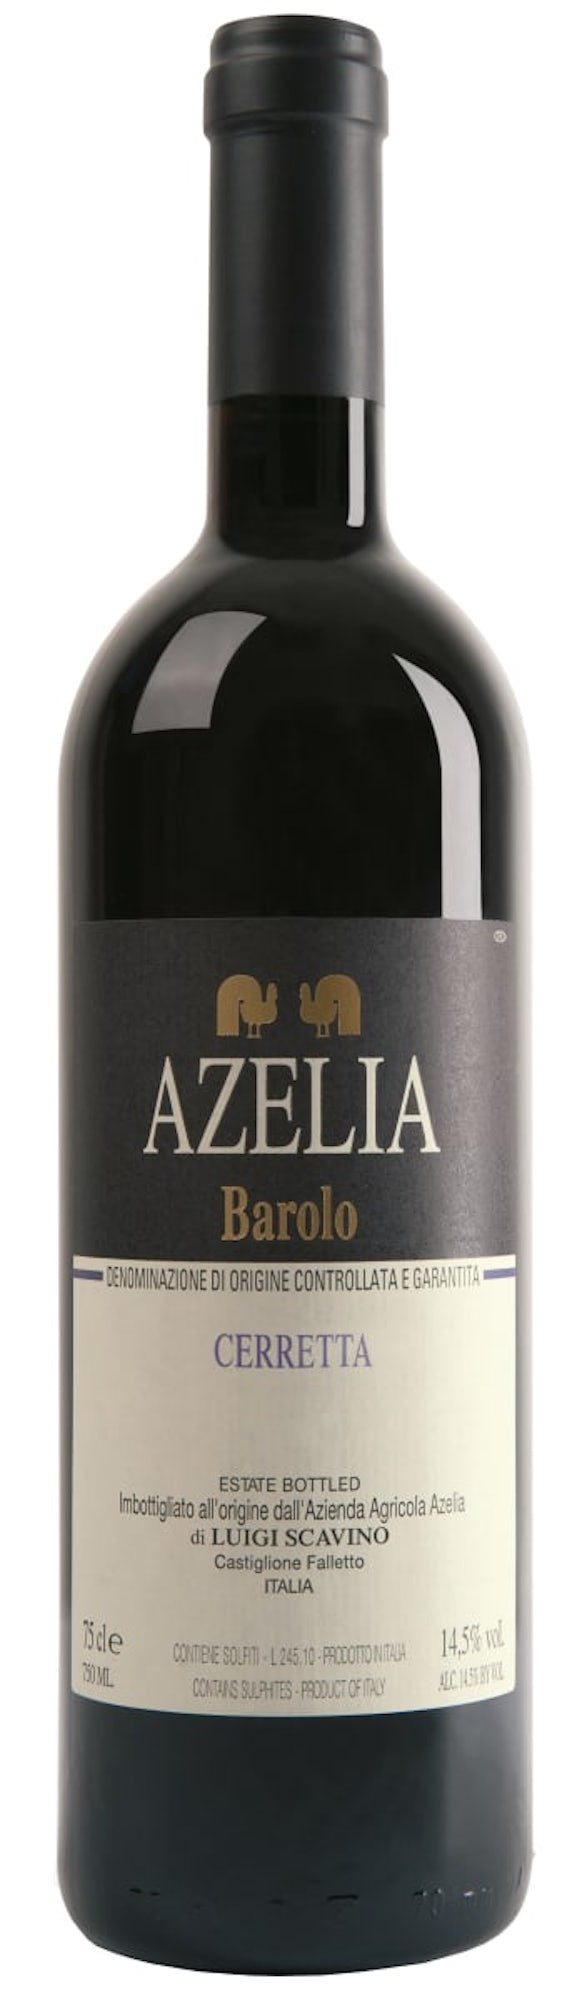 Azelia Barolo “Cerretta” 2019